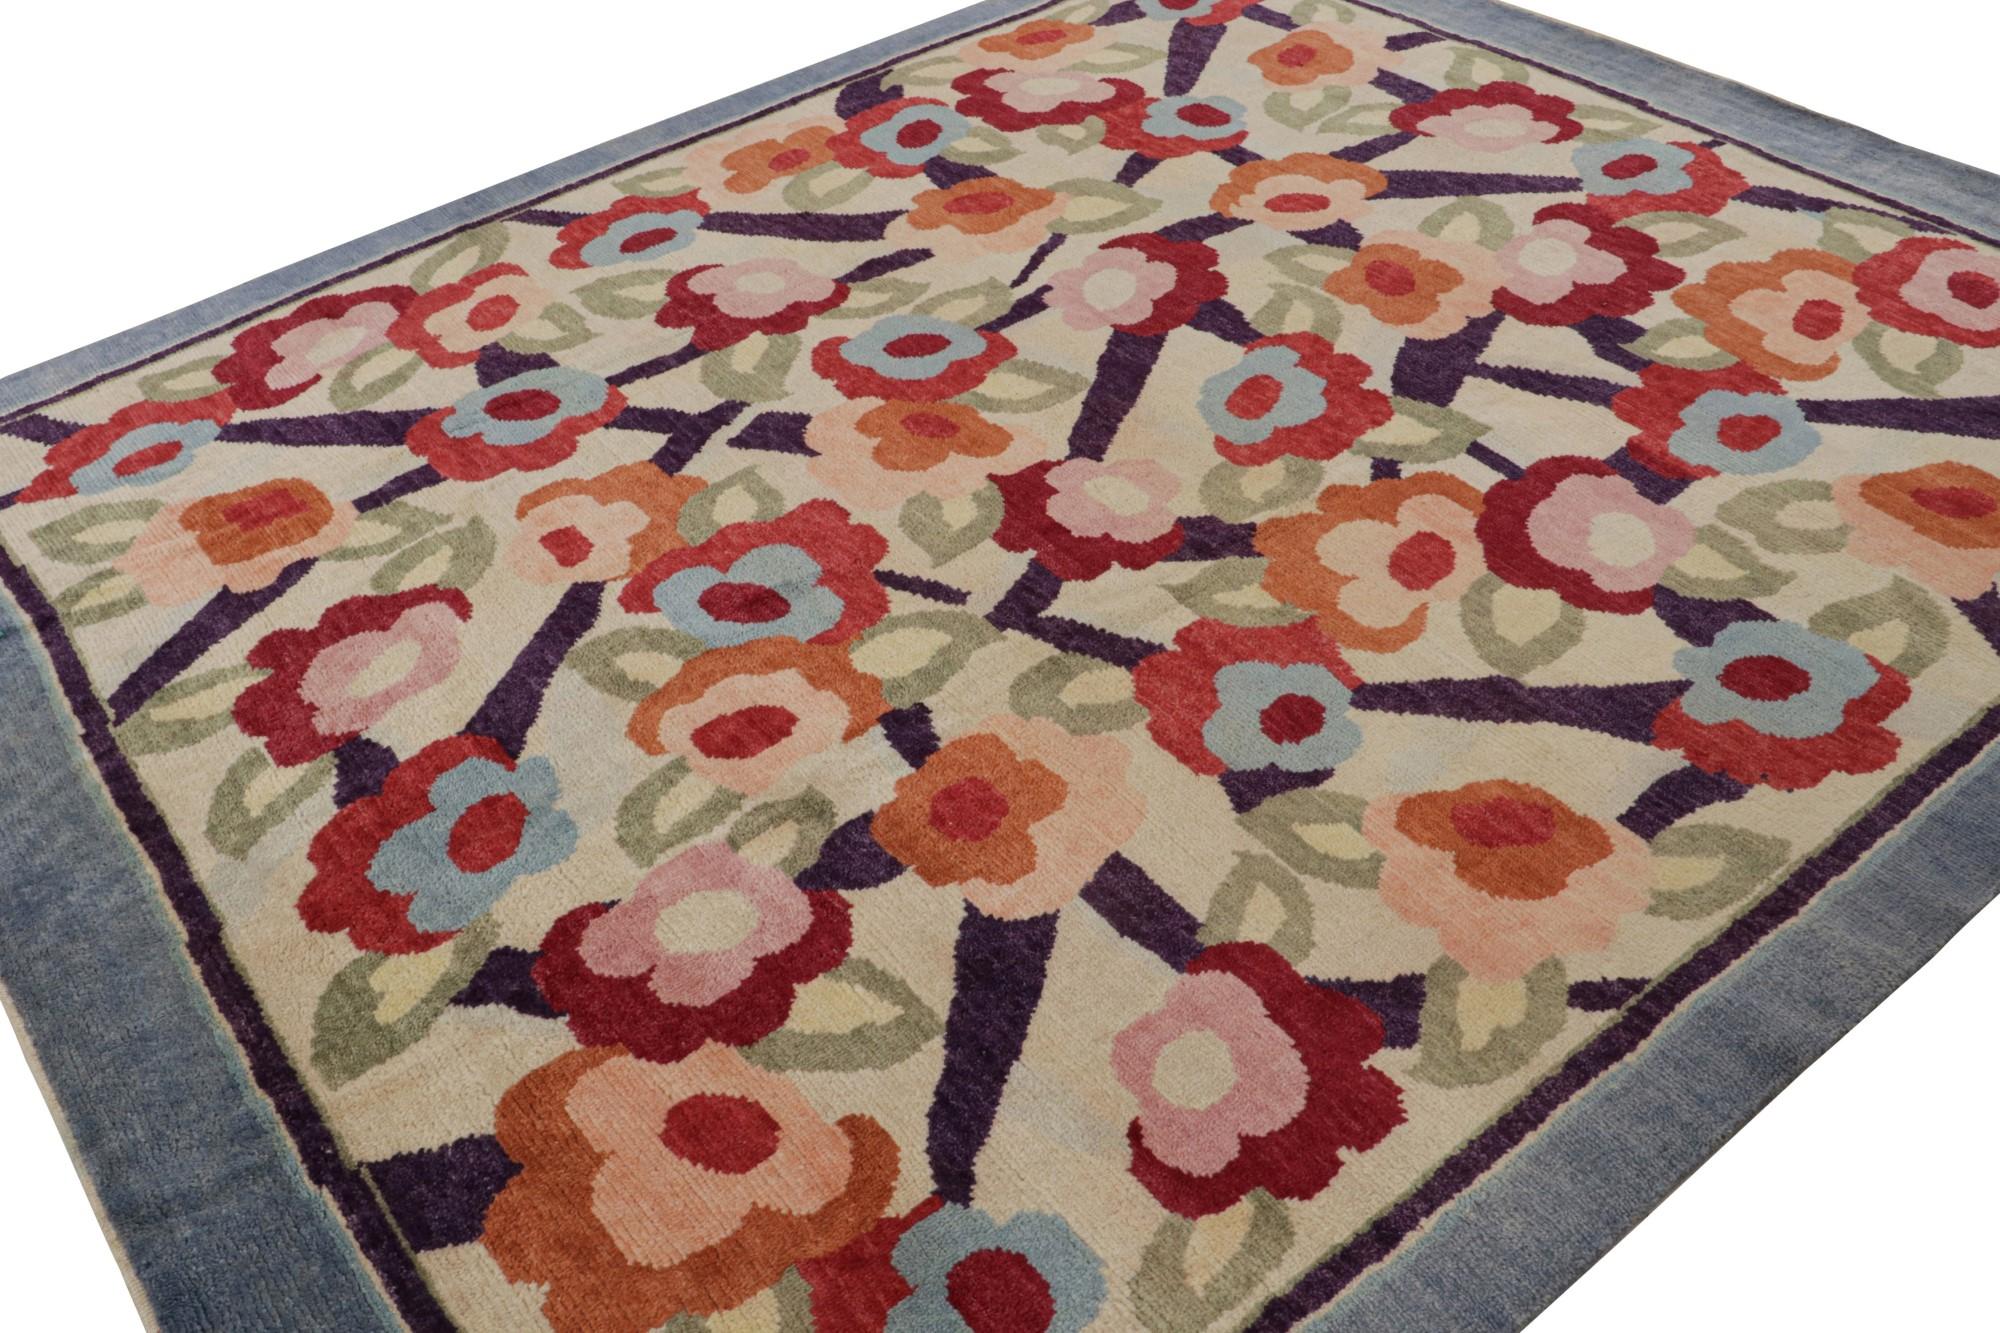 Cette ode 8x10 aux tapis Art déco français est le prochain ajout à la nouvelle collection Deco de Rug & Kilim. Noué à la main en laine.

Plus loin dans le Design :  

Cette pièce arbore le style déco des années 1920 avec des fleurs polychromes